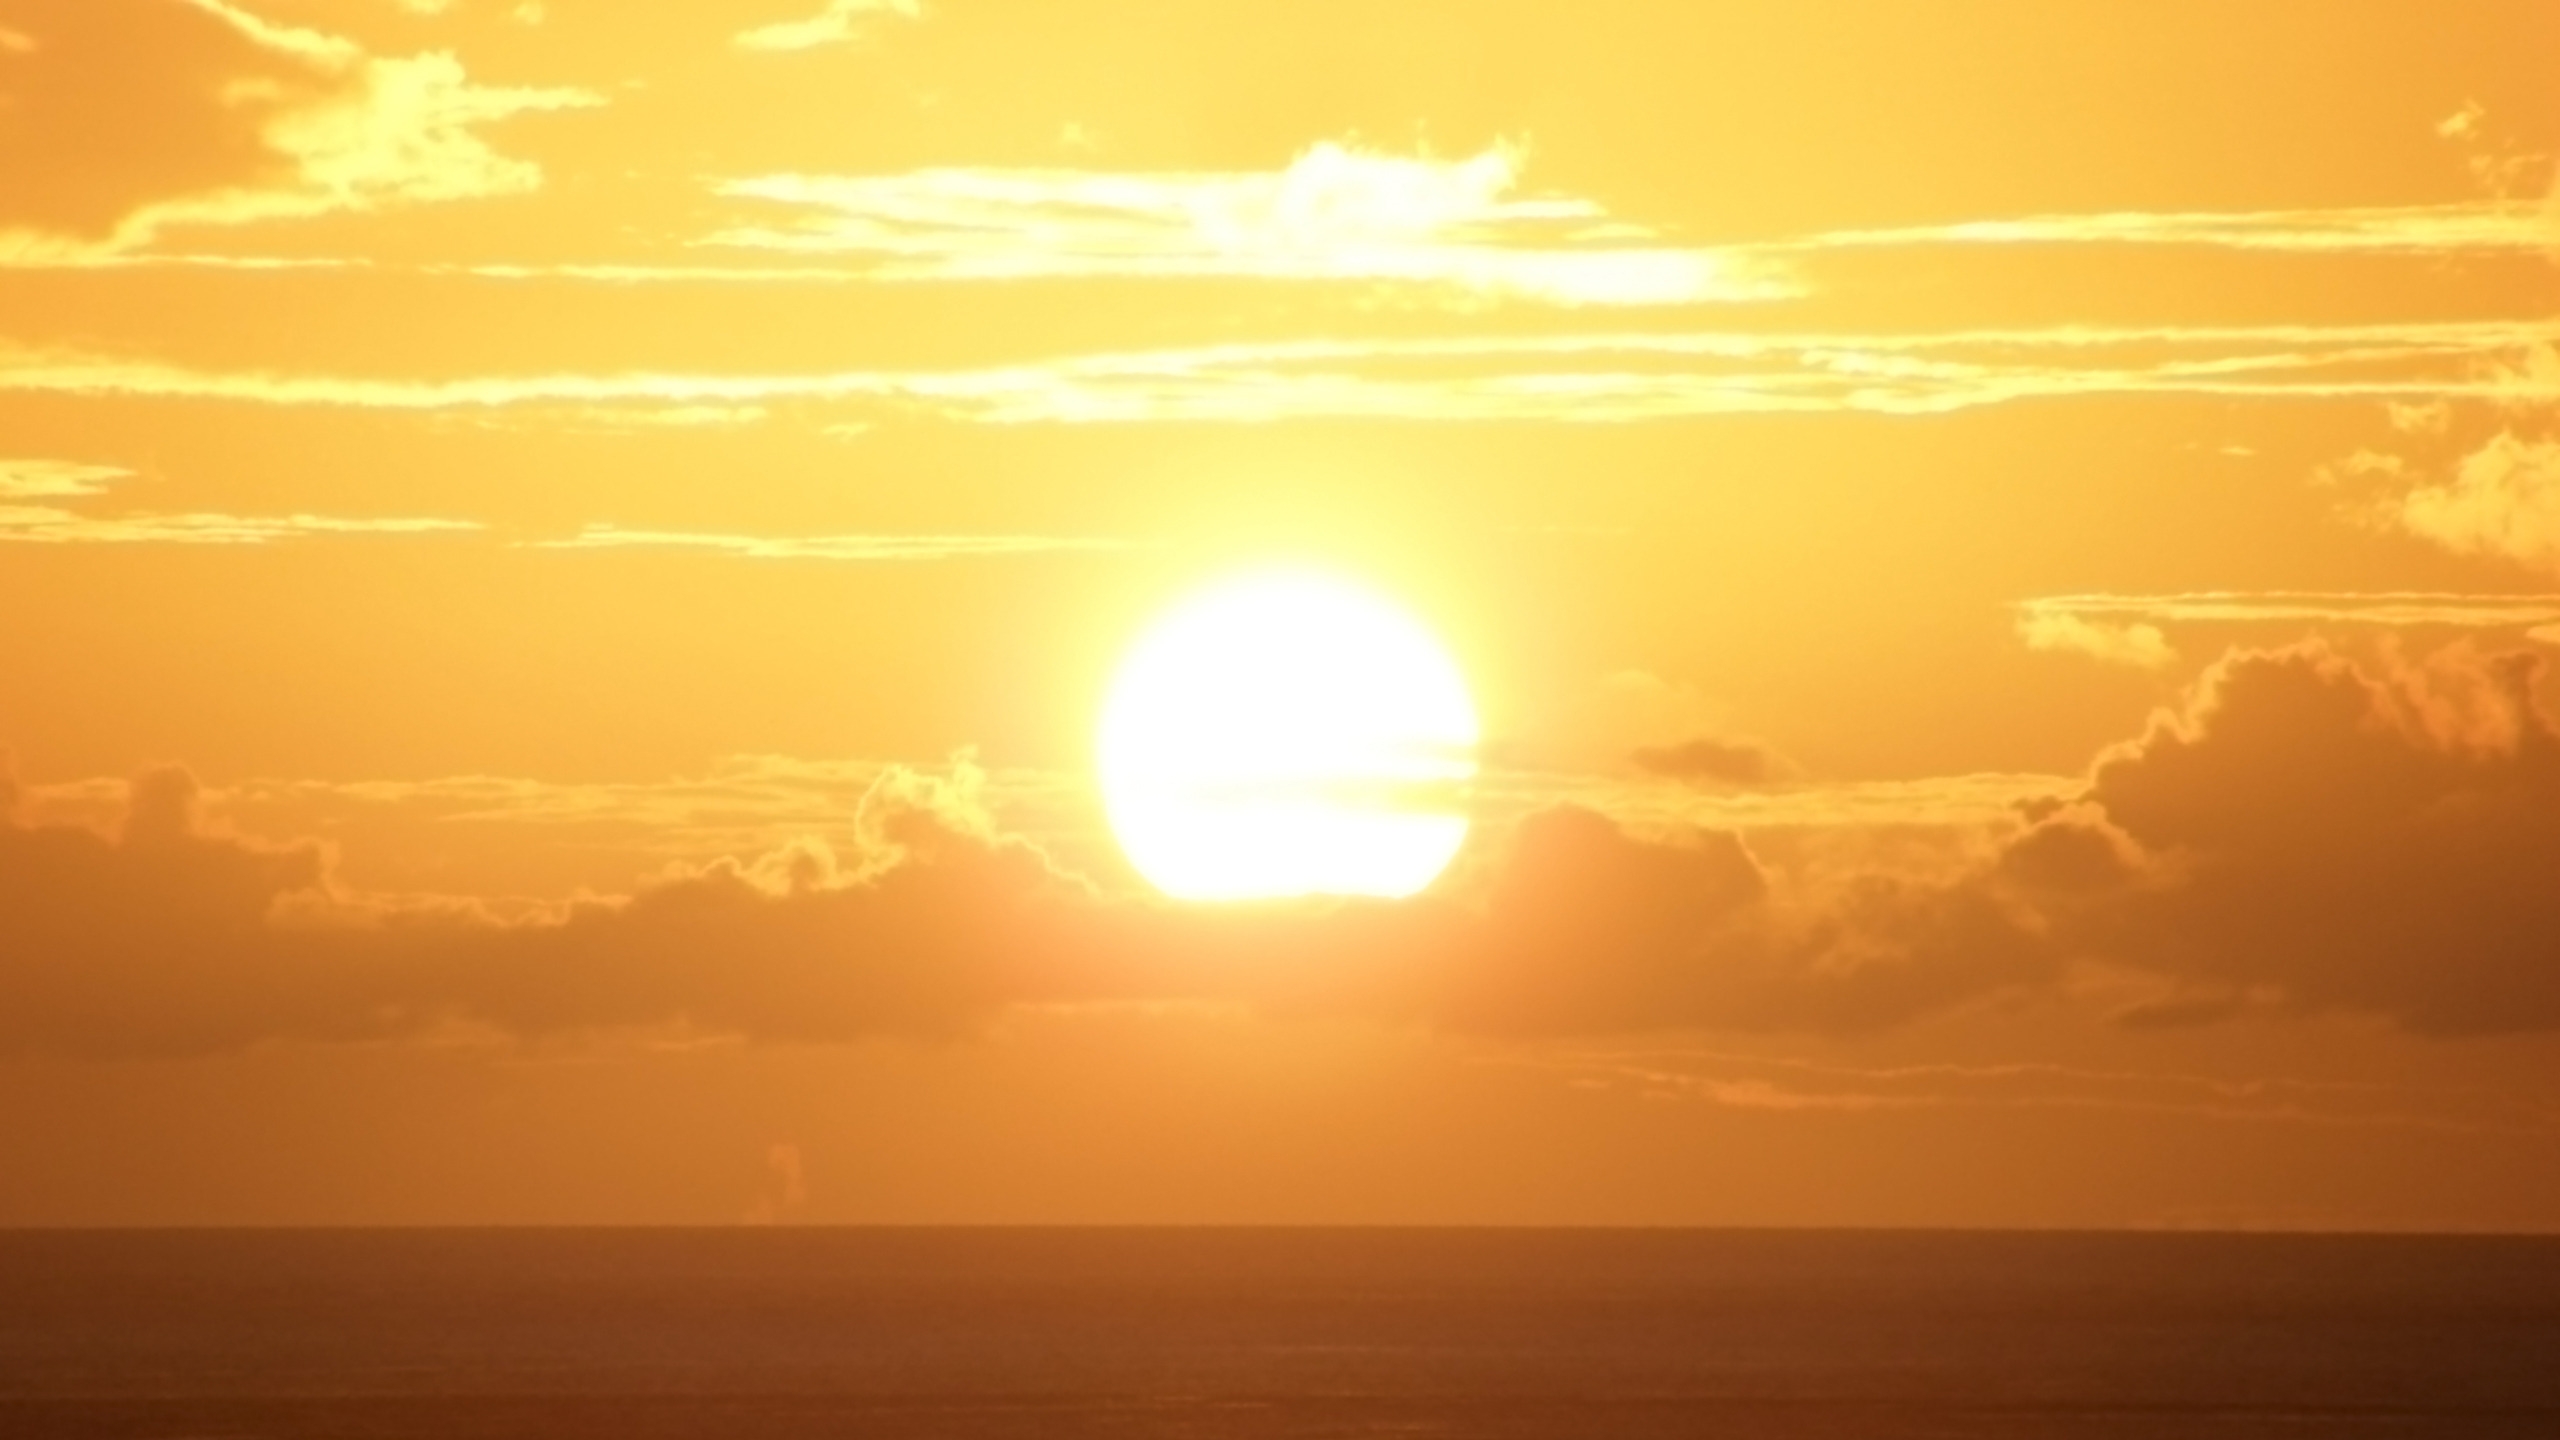 Breathtaking Sunset for 2560x1440 HDTV resolution